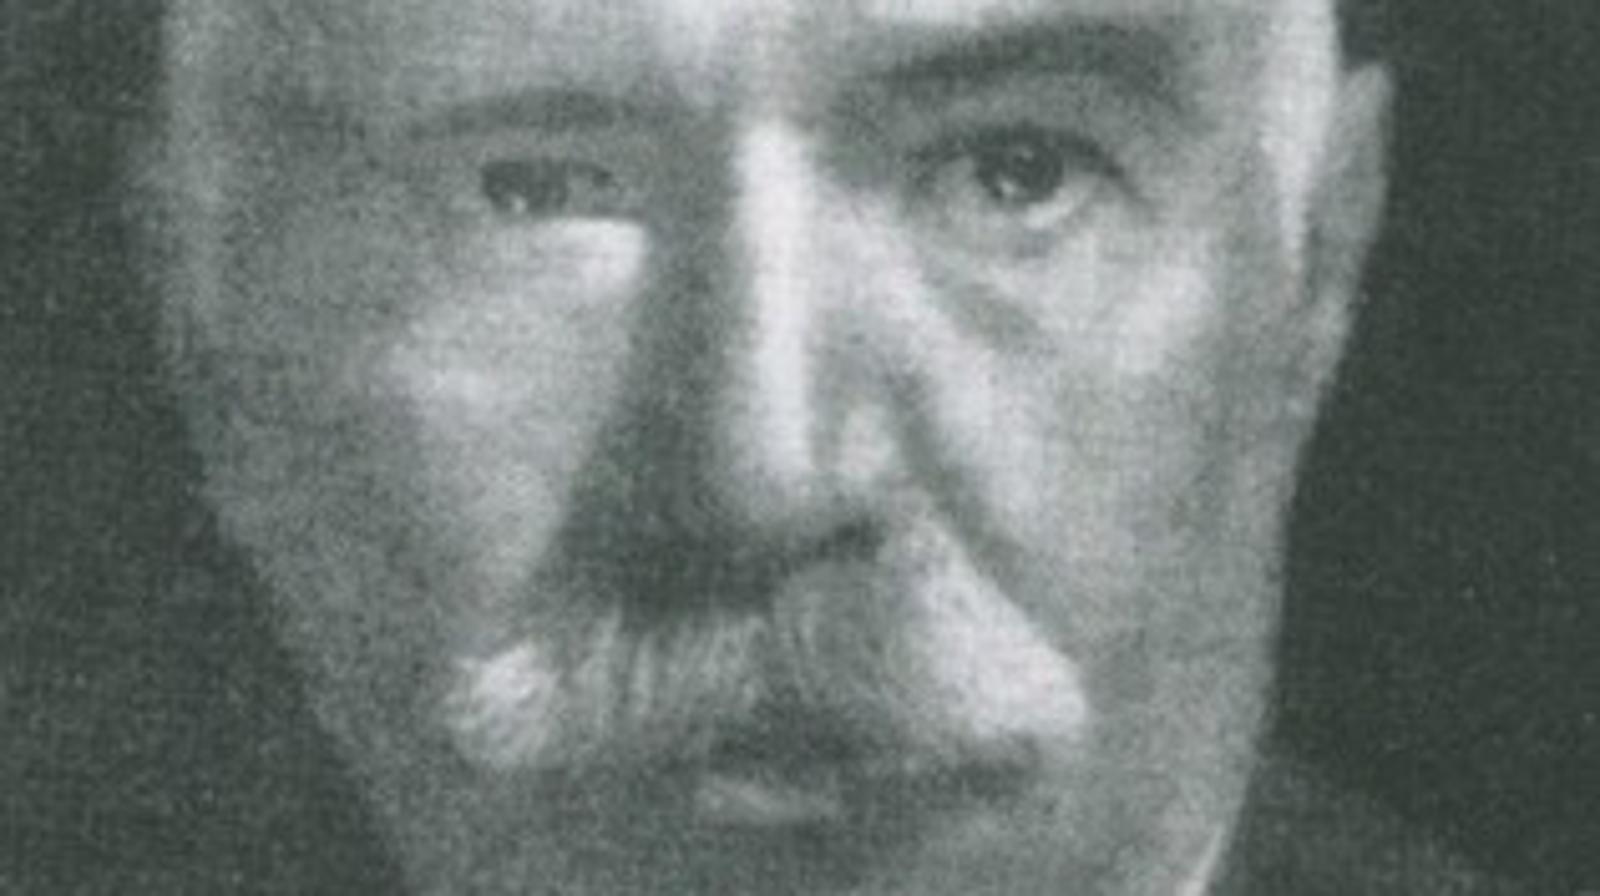 Mijo Filipović (1869-1948)